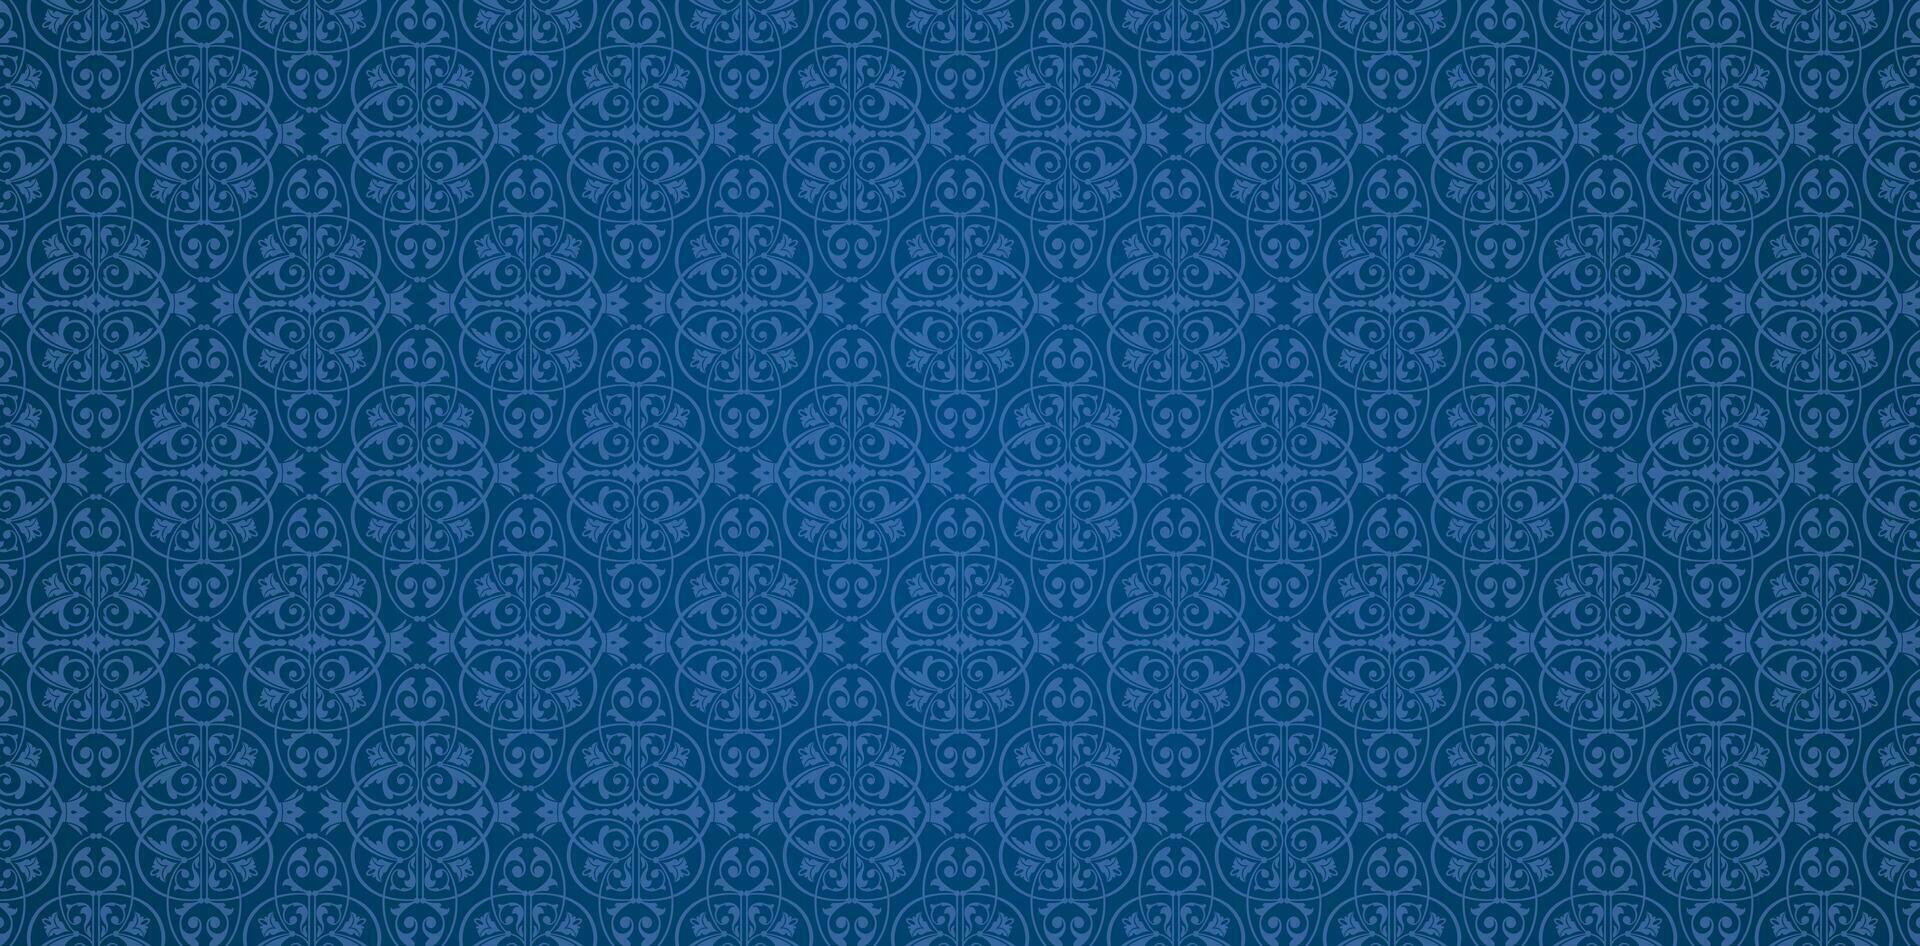 blauw gebreid kleding stof getextureerde achtergronden met een patronen van krullen en bloemen elementen voor textiel achtergronden, boeken omslag, digitaal interfaces, prints Sjablonen materiaal kaarten uitnodiging, wraps vector